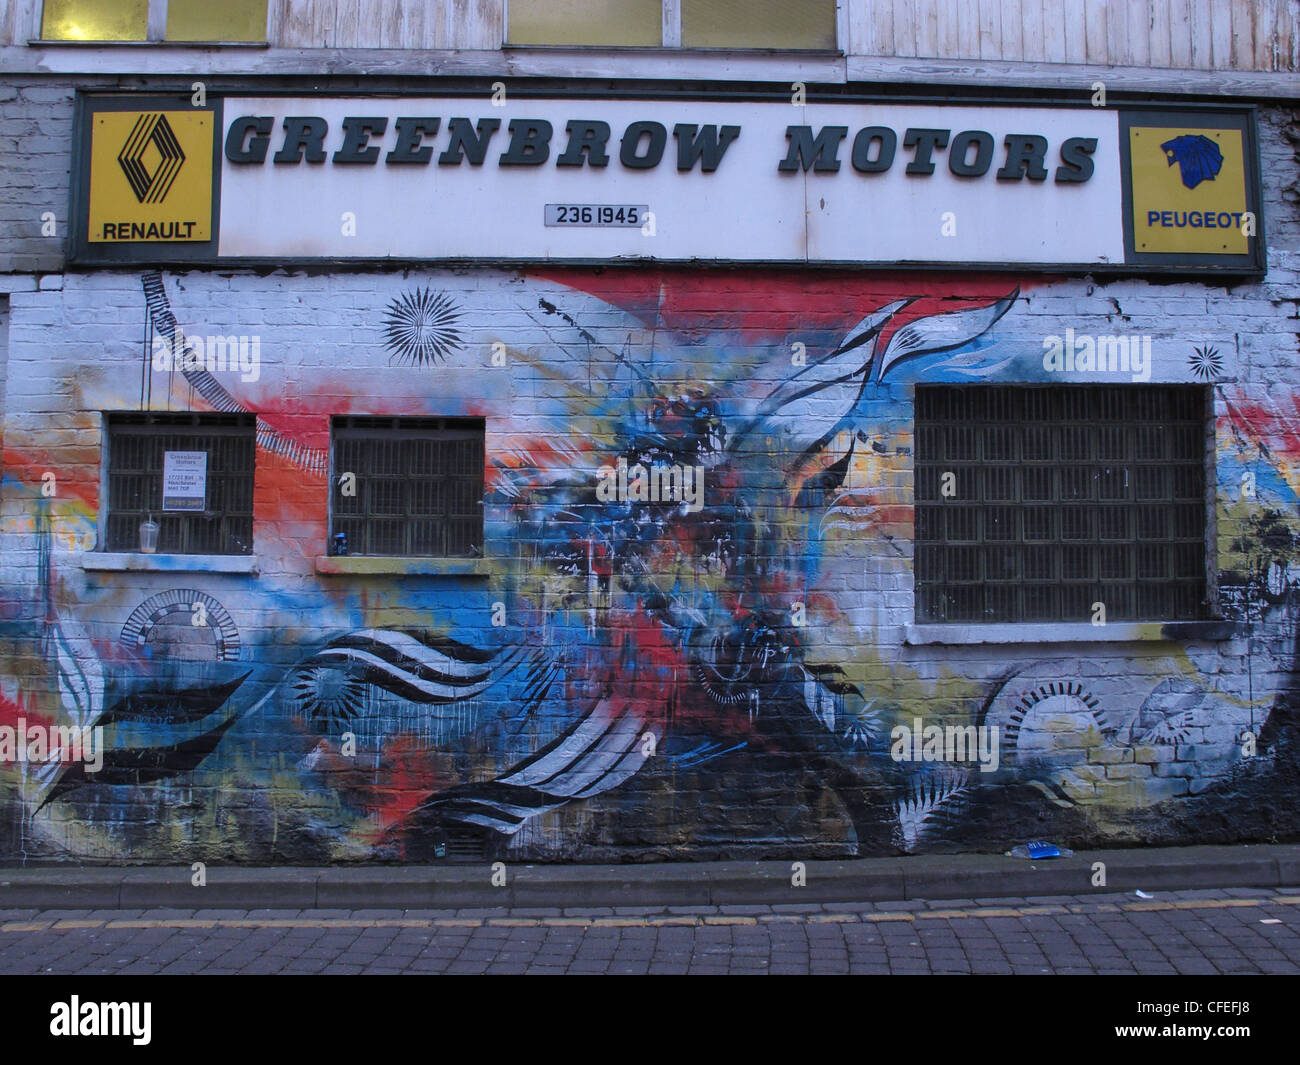 Centre-ville de Manchester à graffiti Greenbow Motors 51 Nouvelles Wakefield St Banque D'Images